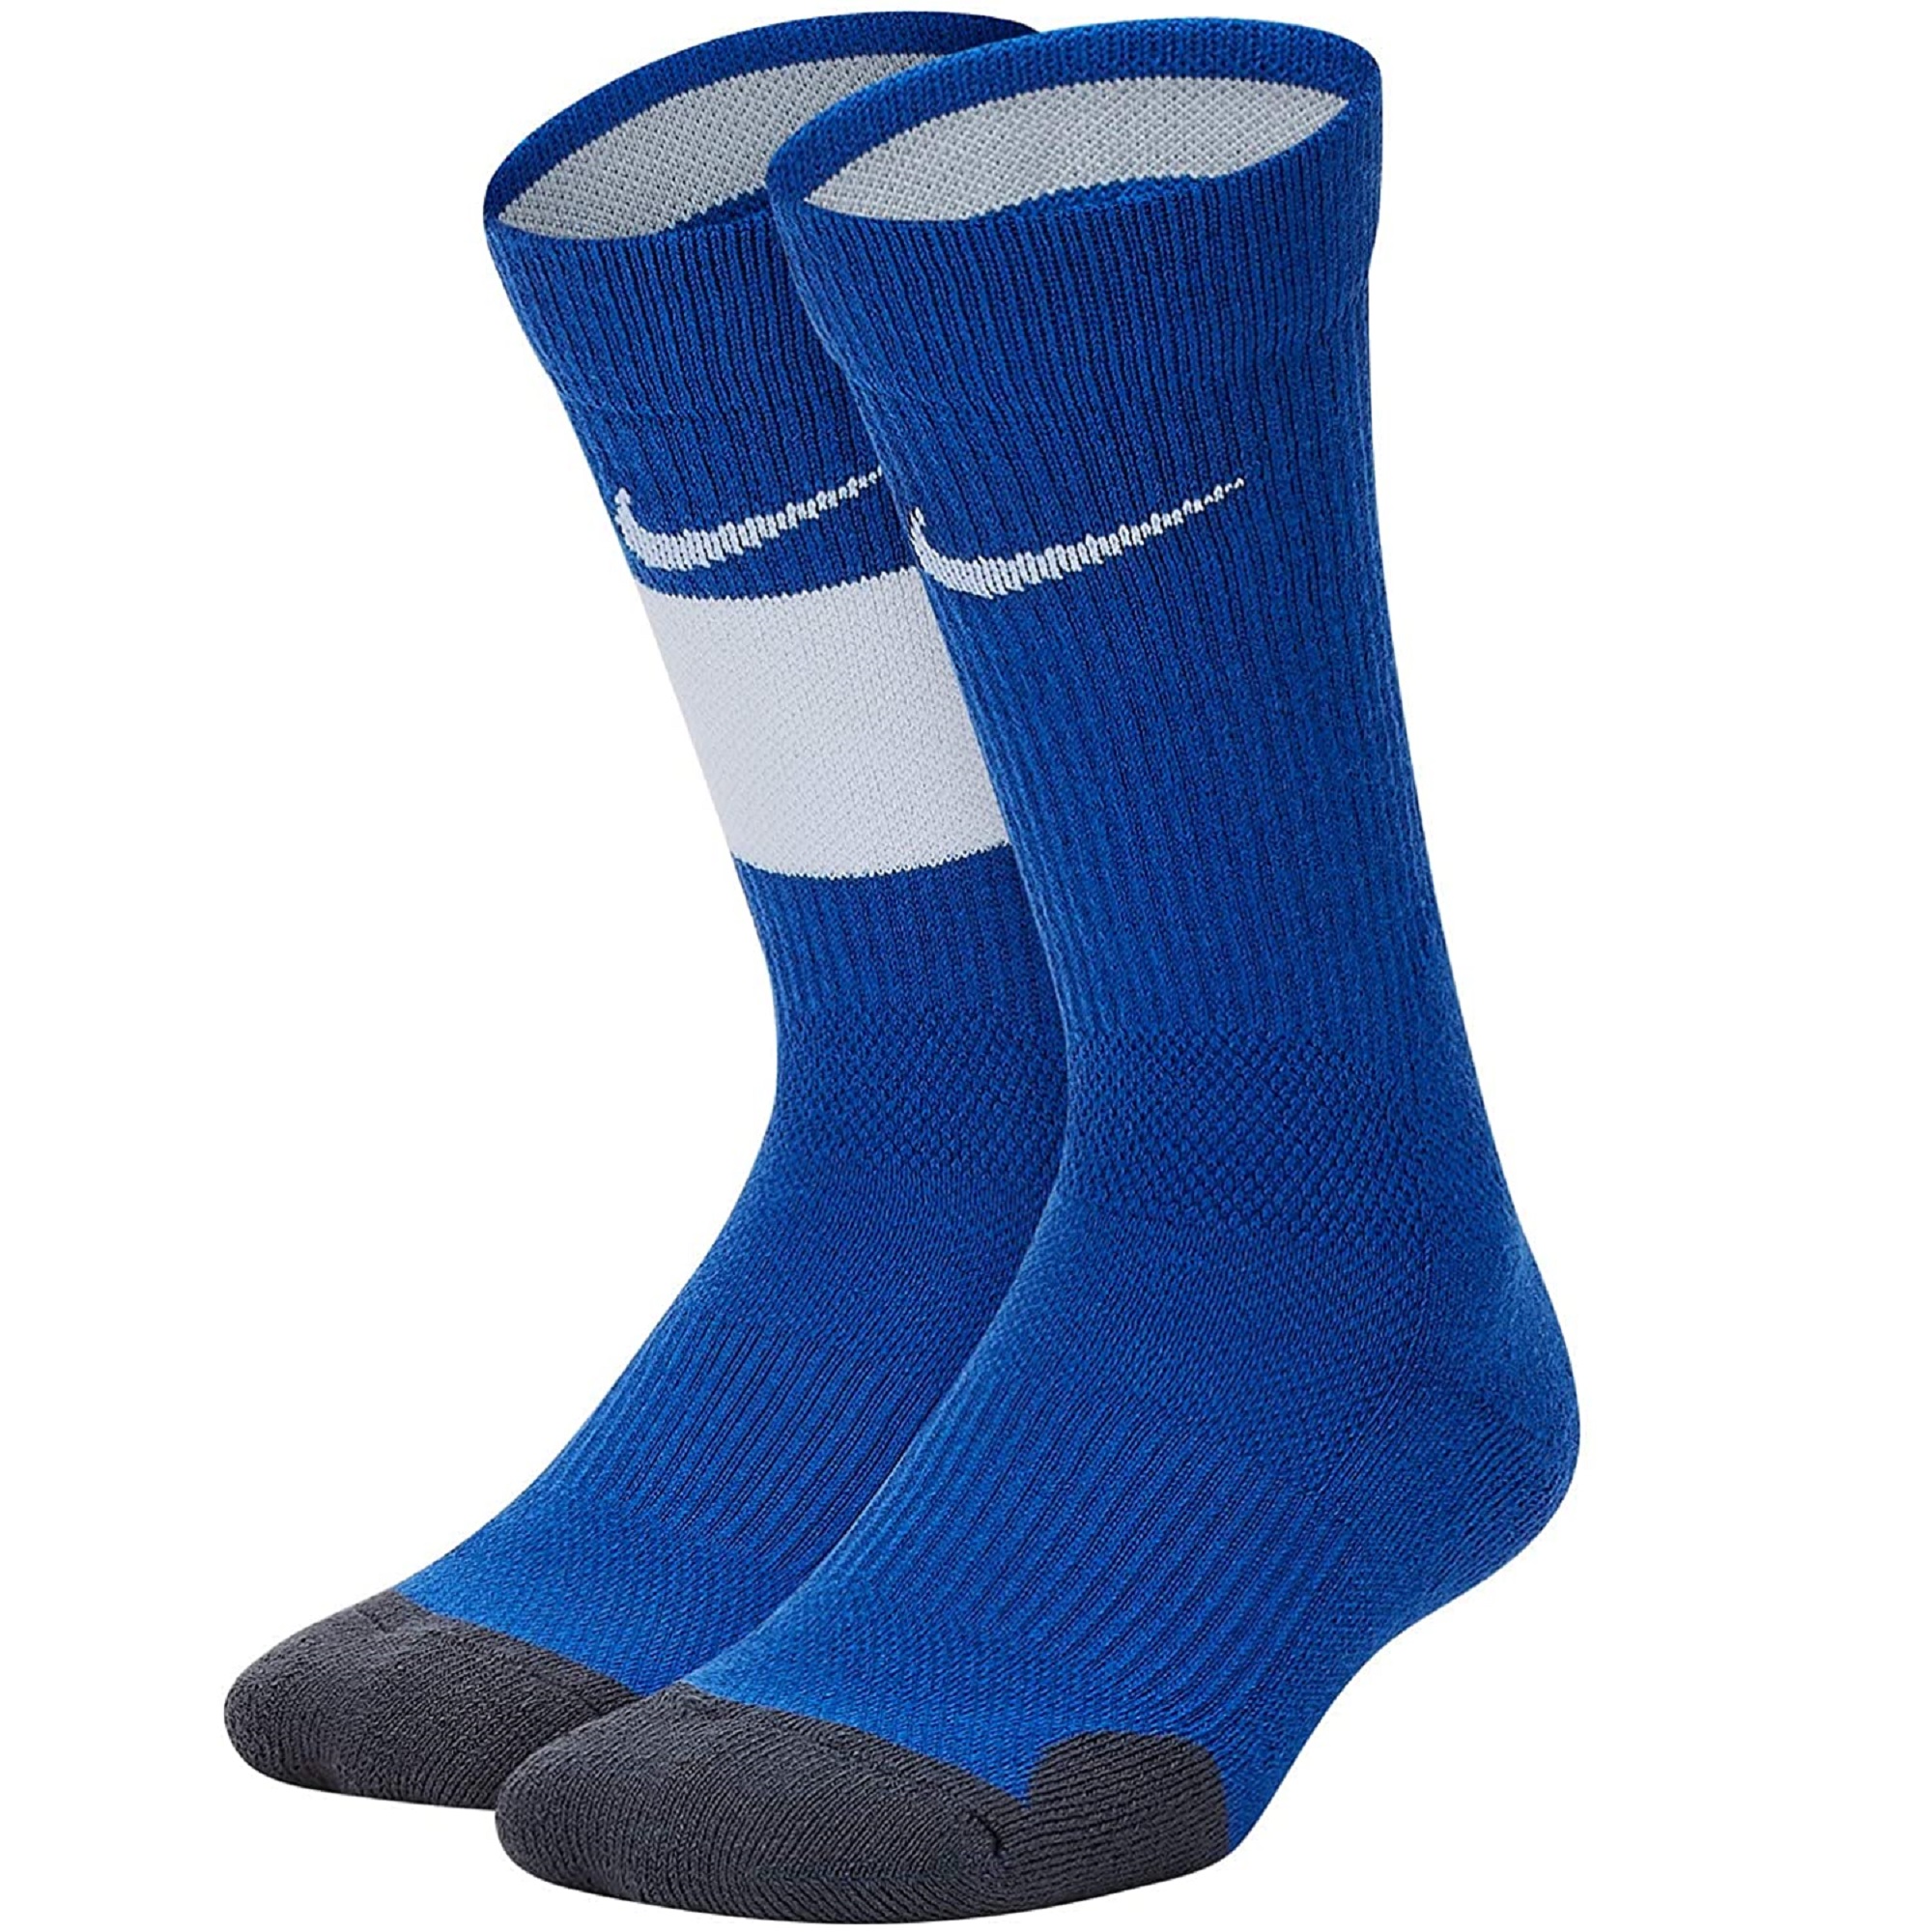 nike socks for basketball 2